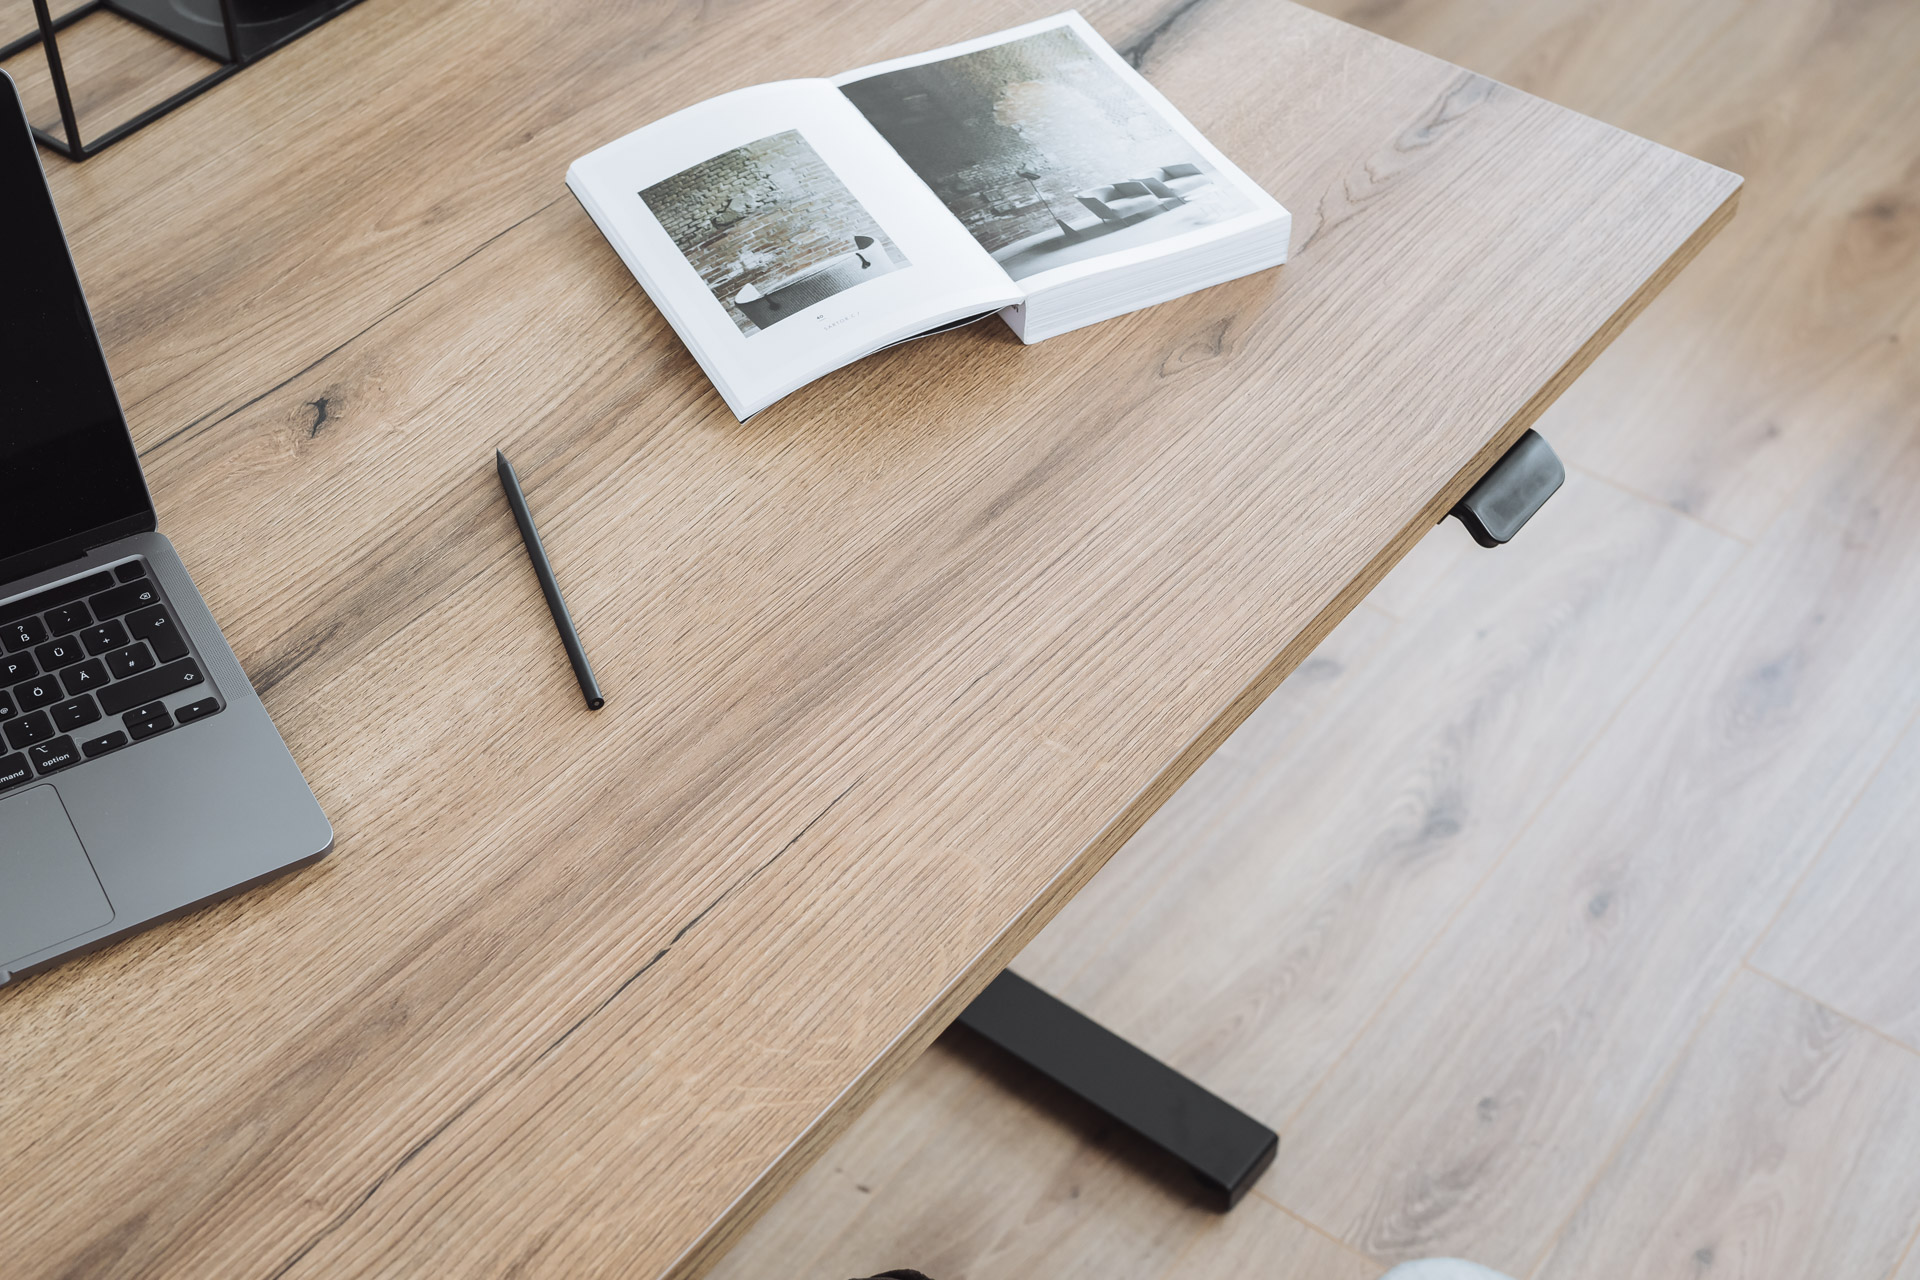 Holzplatte-Online-Tischgestell-hoehenverstellbar-Schreibtisch-Linak-web-11.jpg